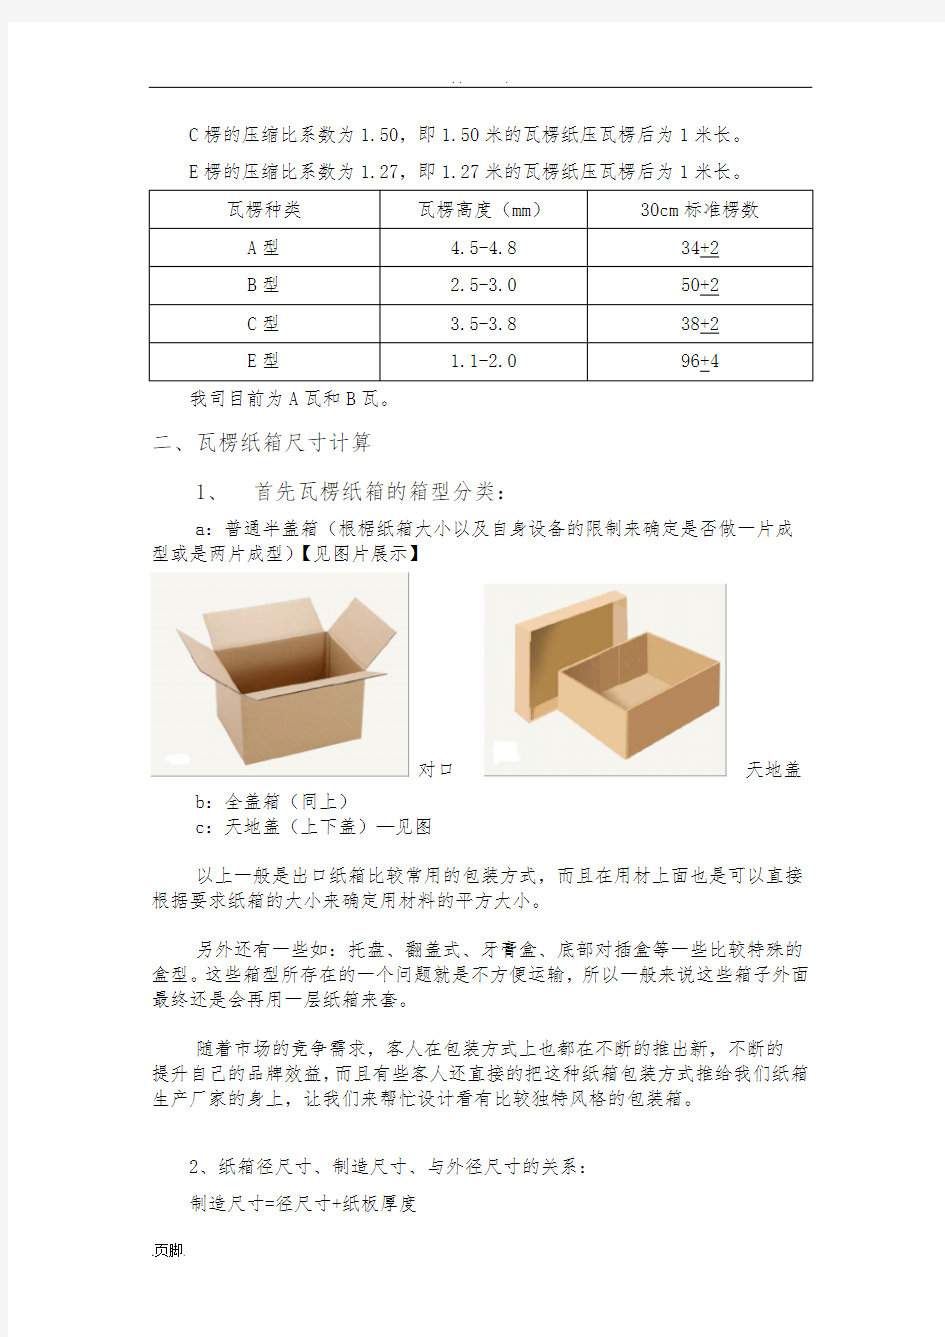 瓦楞纸箱的计算公式及测量方法